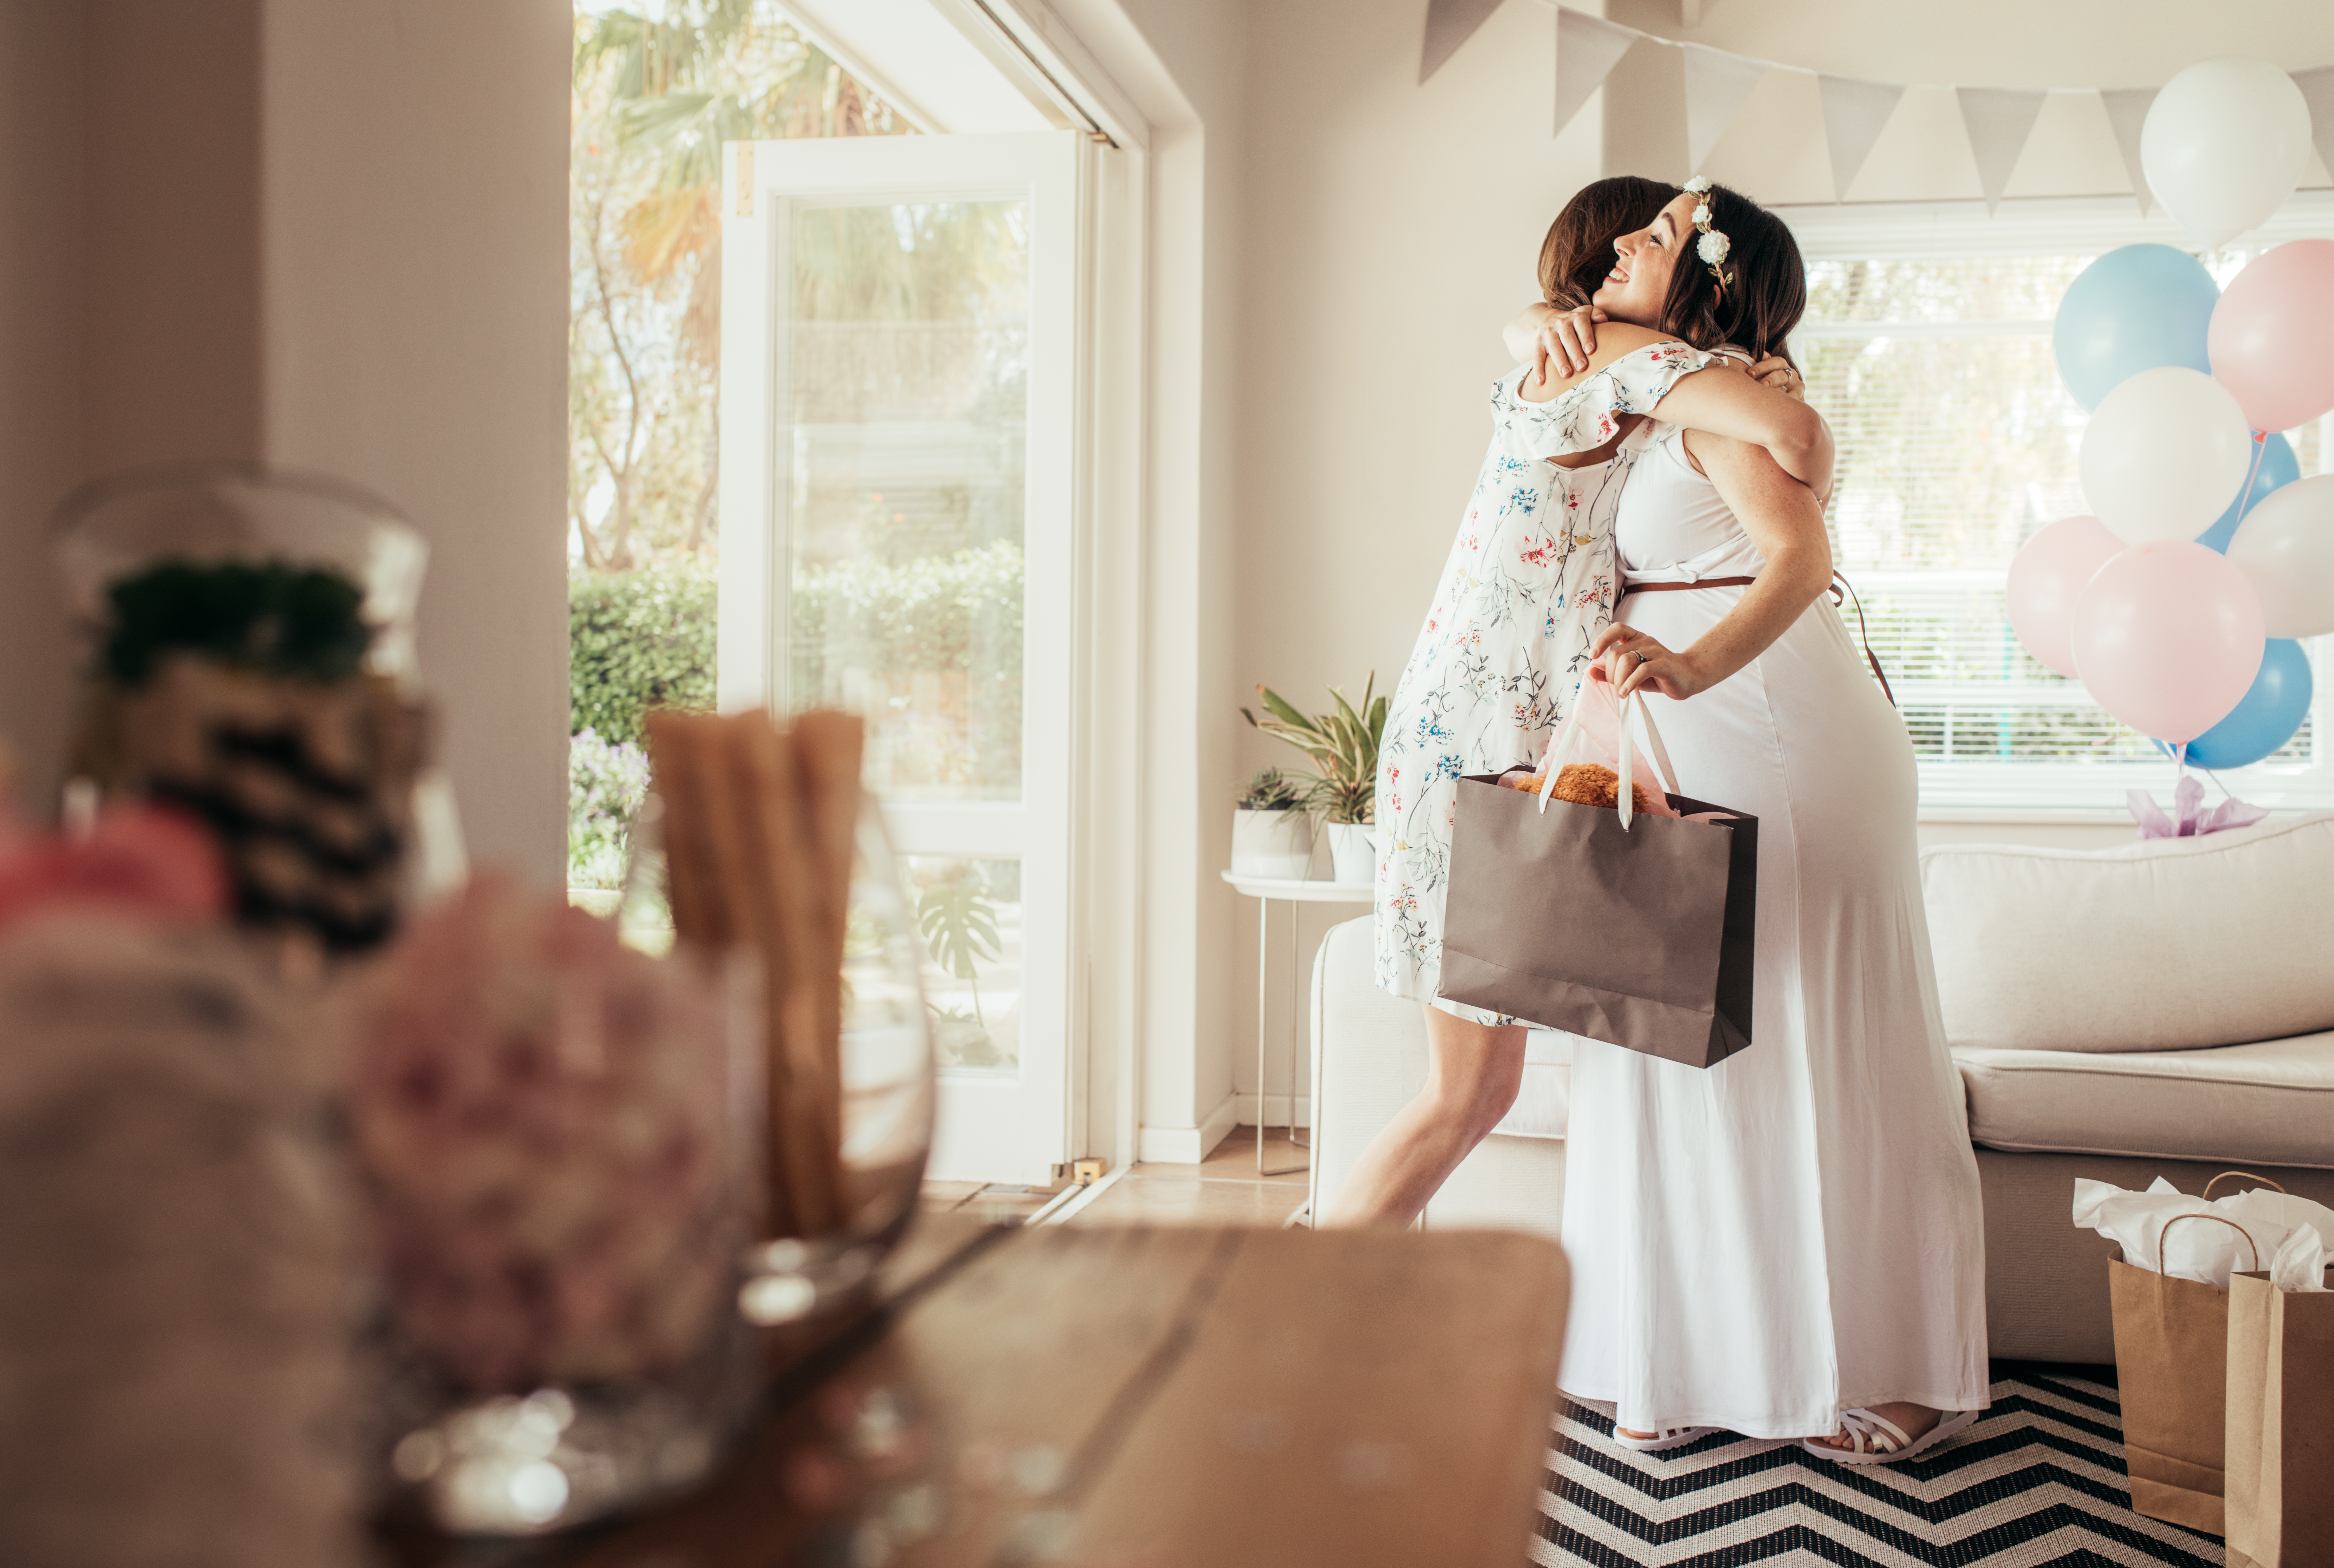 Femme prenant dans ses bras la future maman lors d'une fête prénatale | Source : Shutterstock